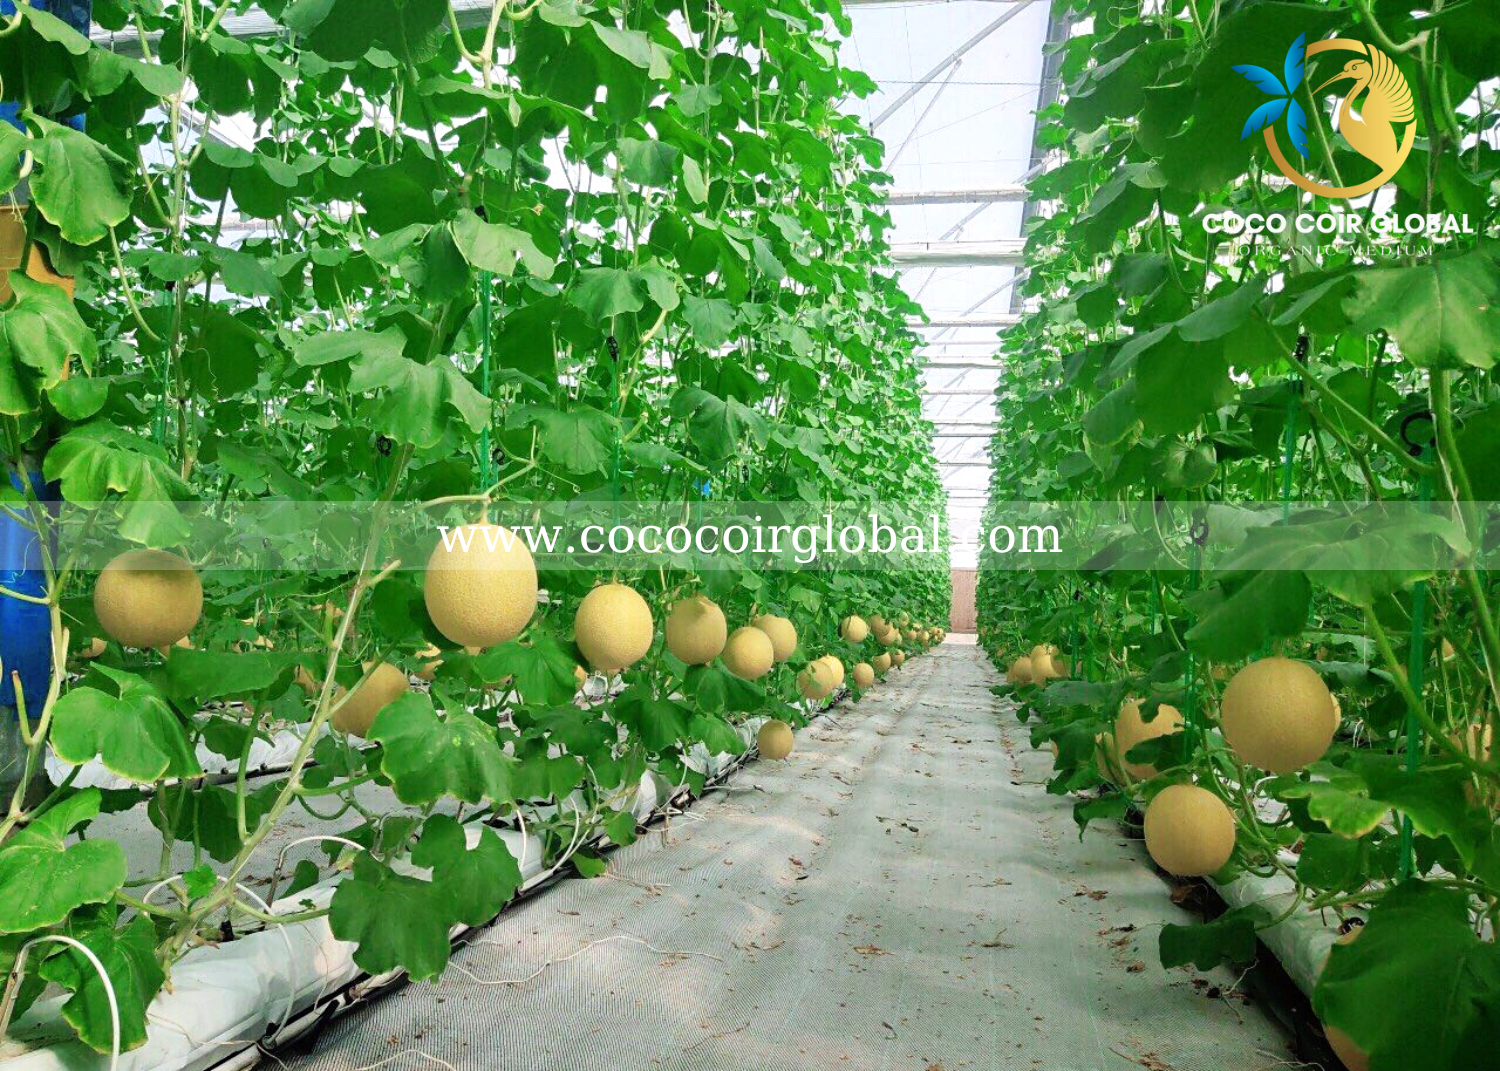 grow-bags-application-coco-coir-global